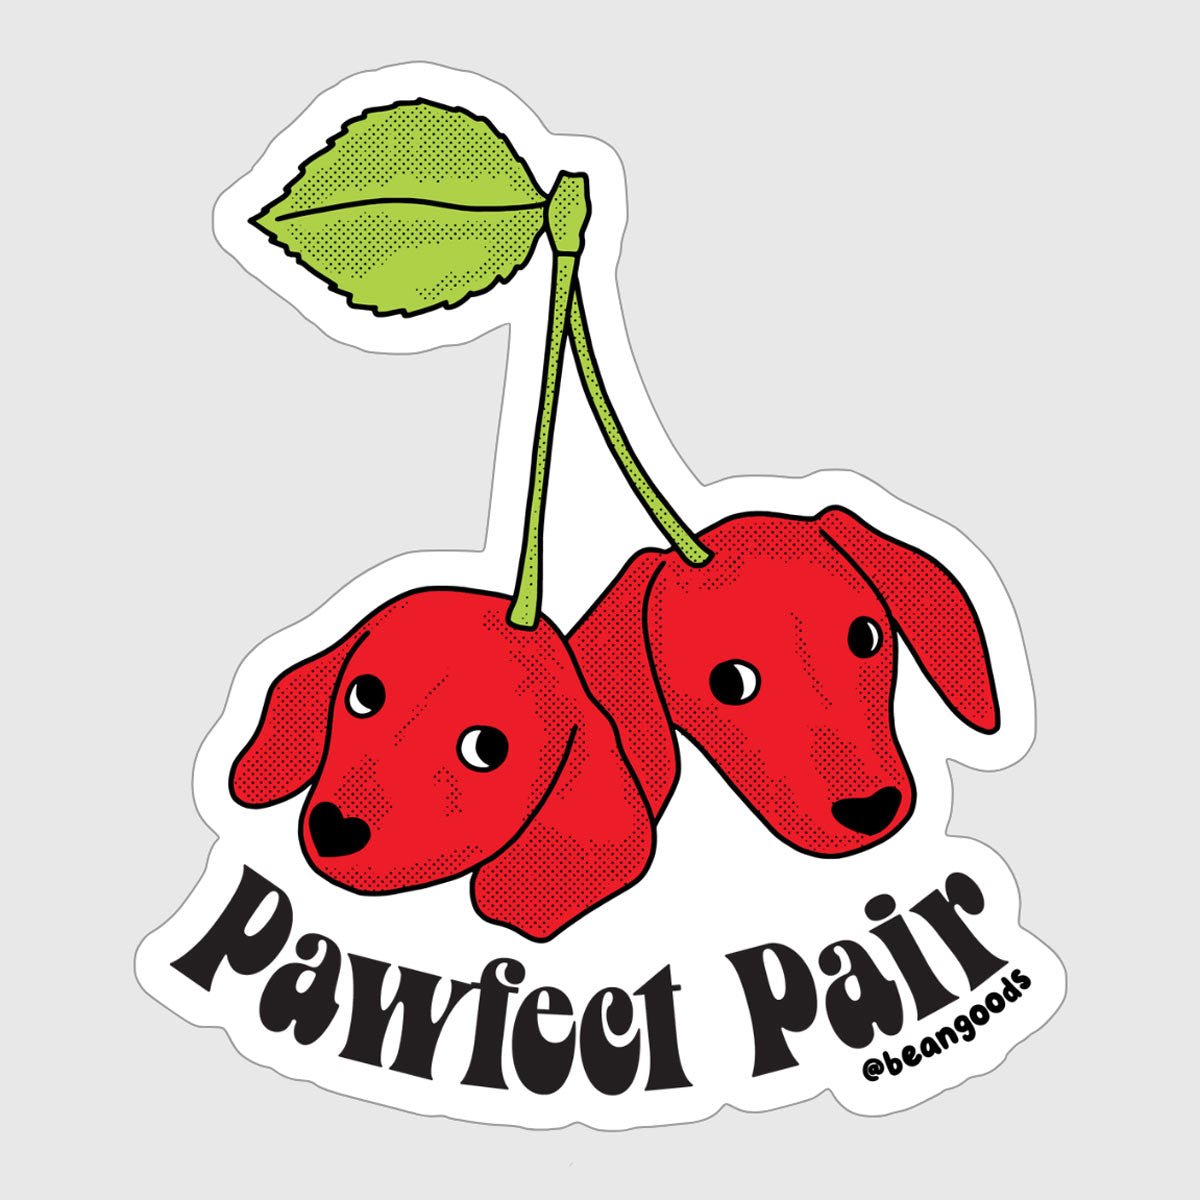 pawfect pair sticker - bean goods